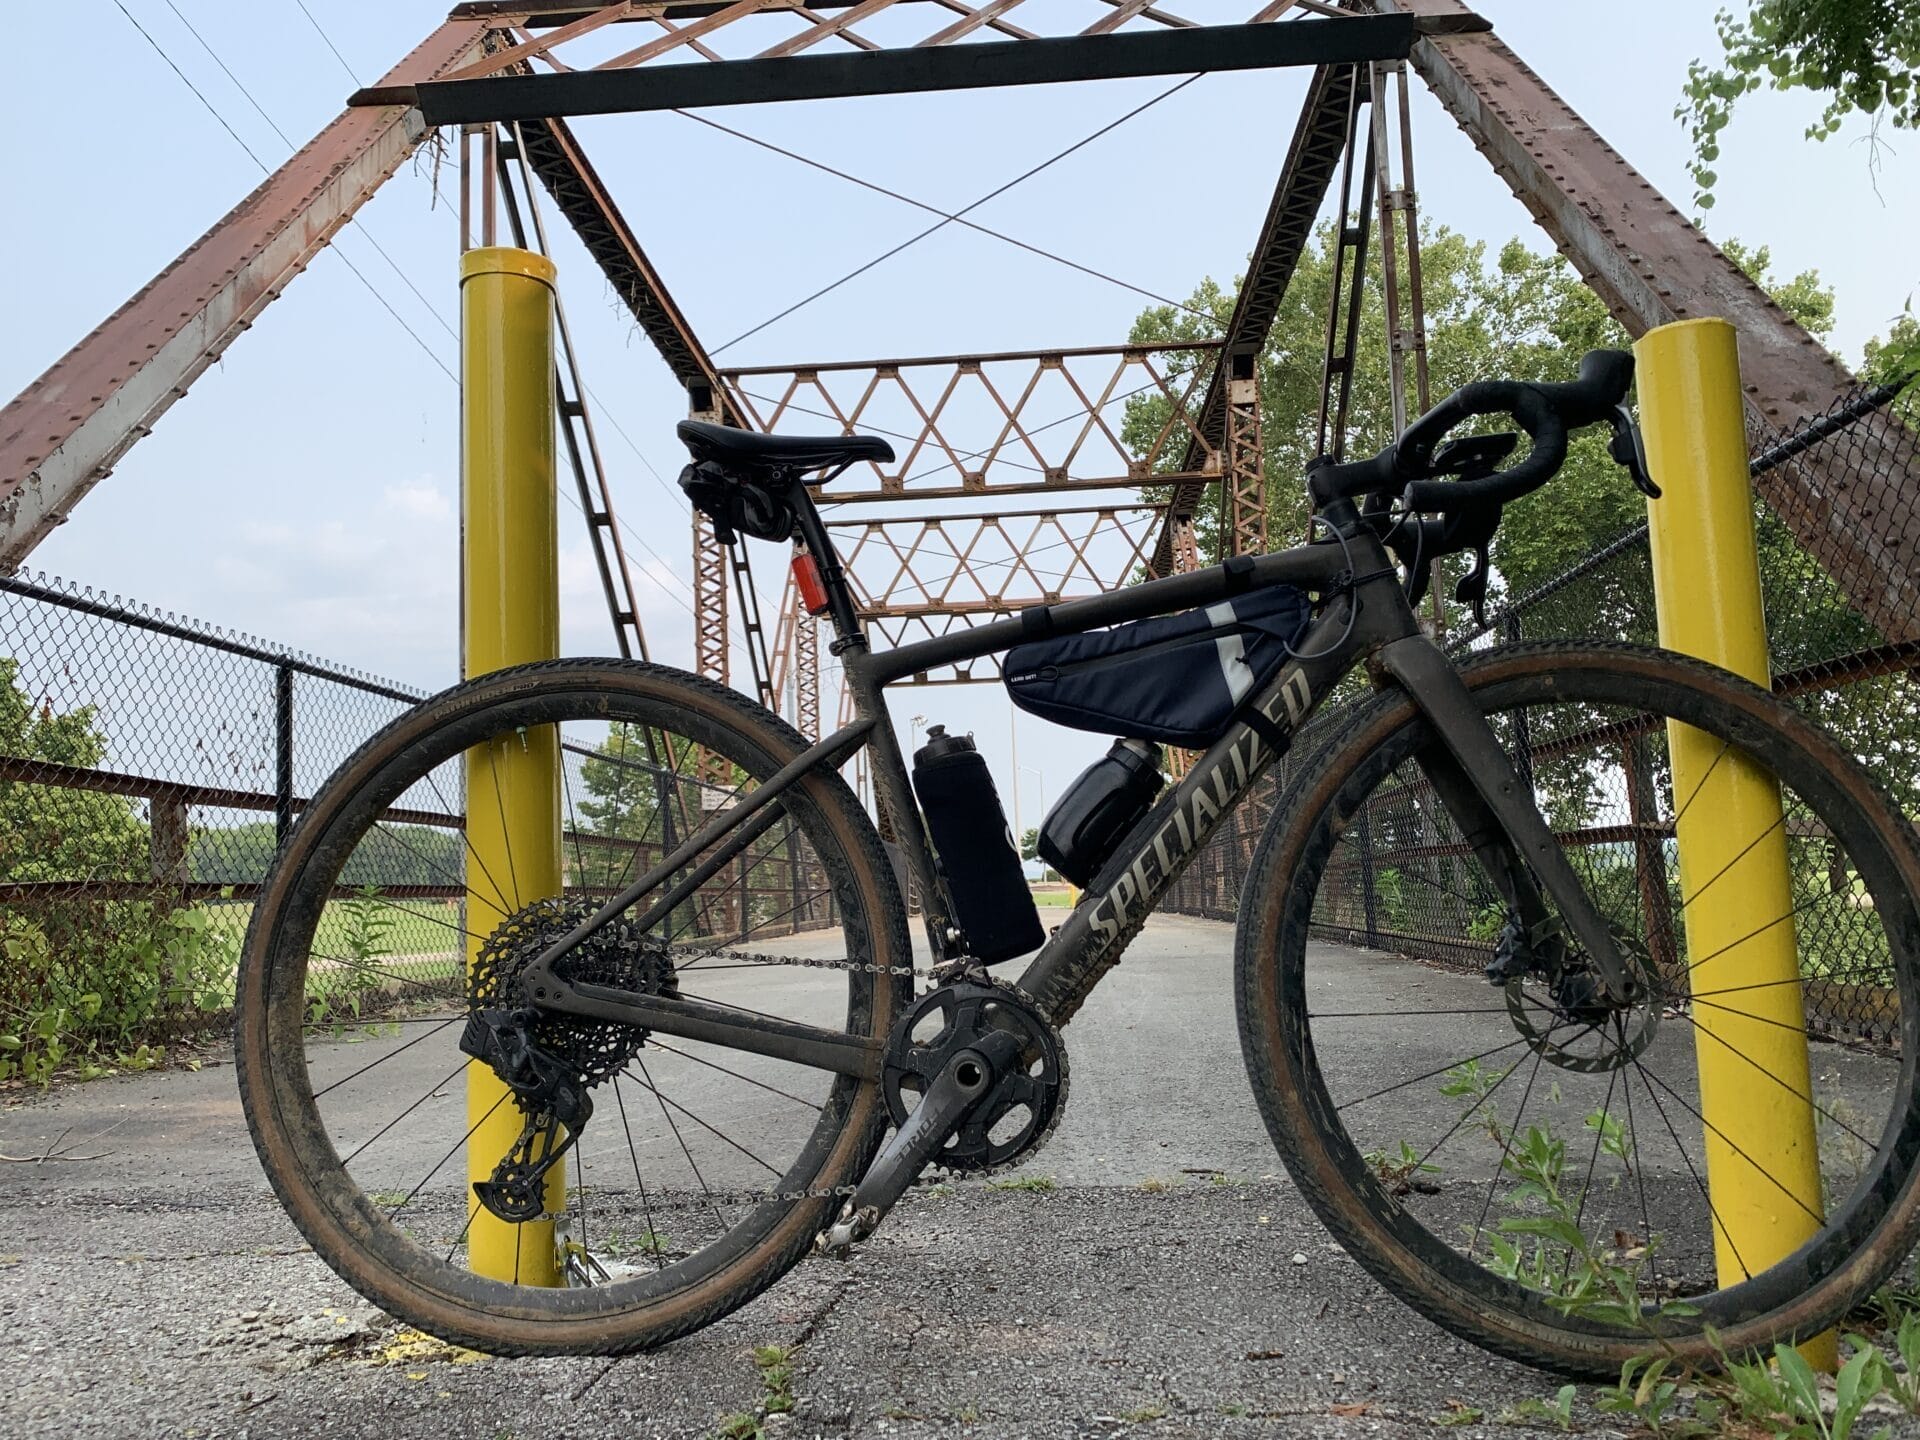 Gravel bike with frame bag on with smaller Fidlock bottle installed on bike. Bridge in background